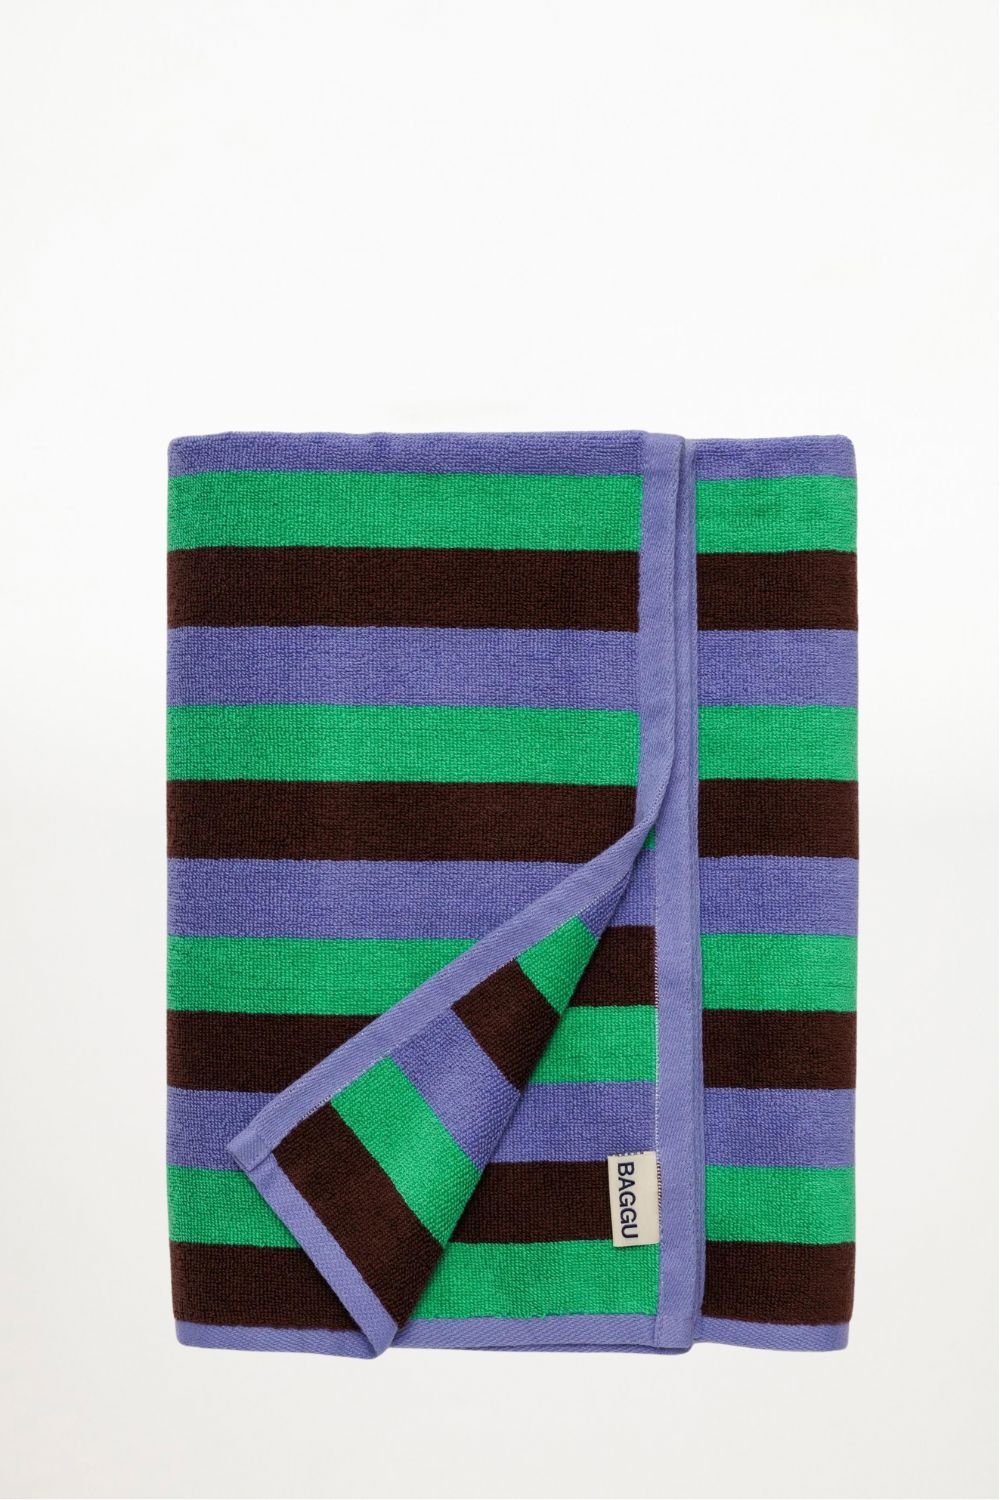 Baggu - Bath Towel - Mint 90's Stripe - Ensemble Studios